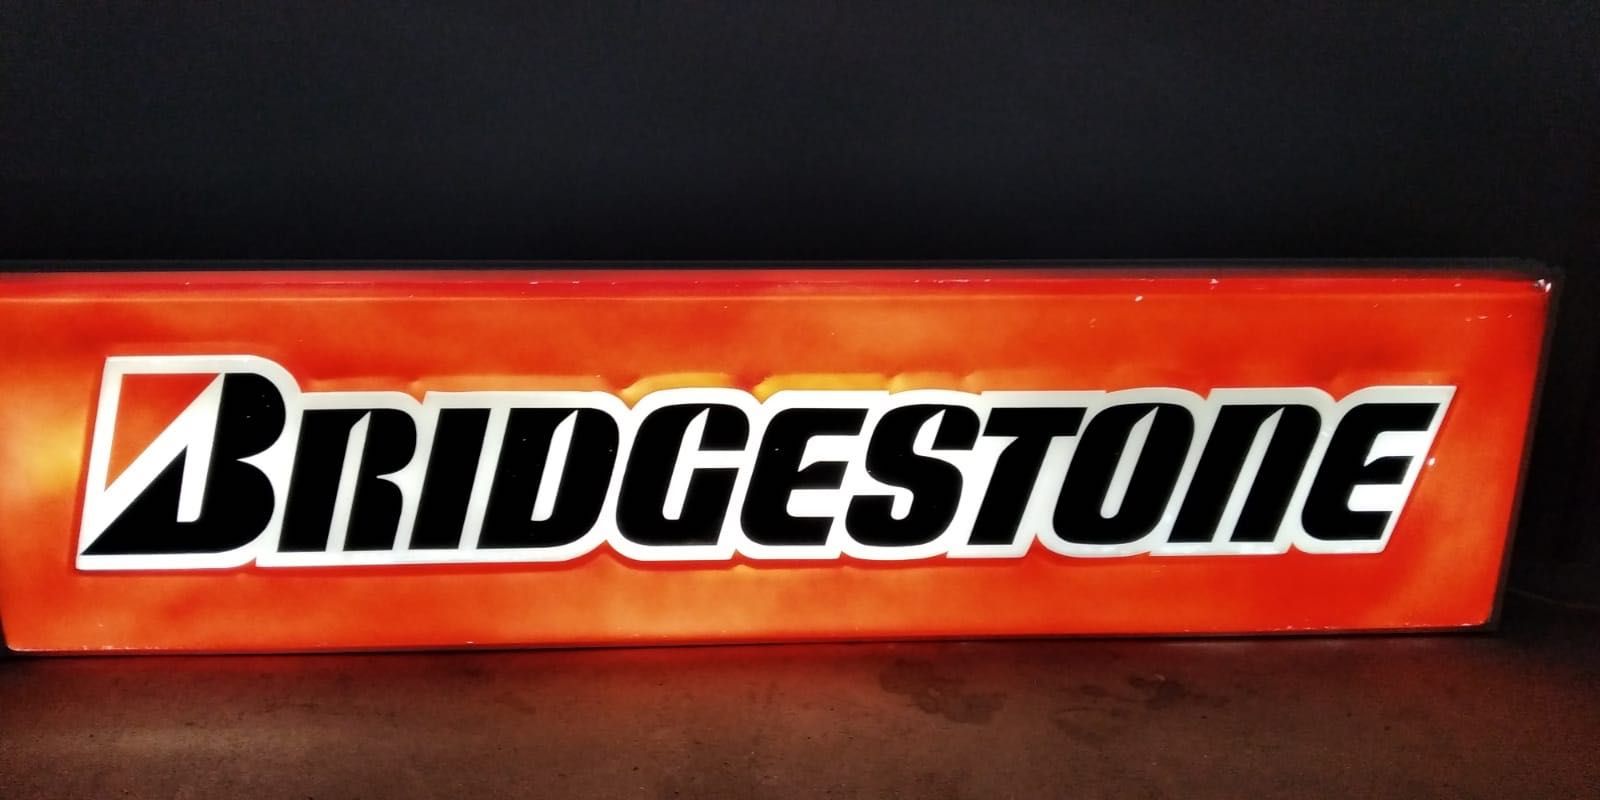 Grande reclame  iluminado  Bridgestone vintage